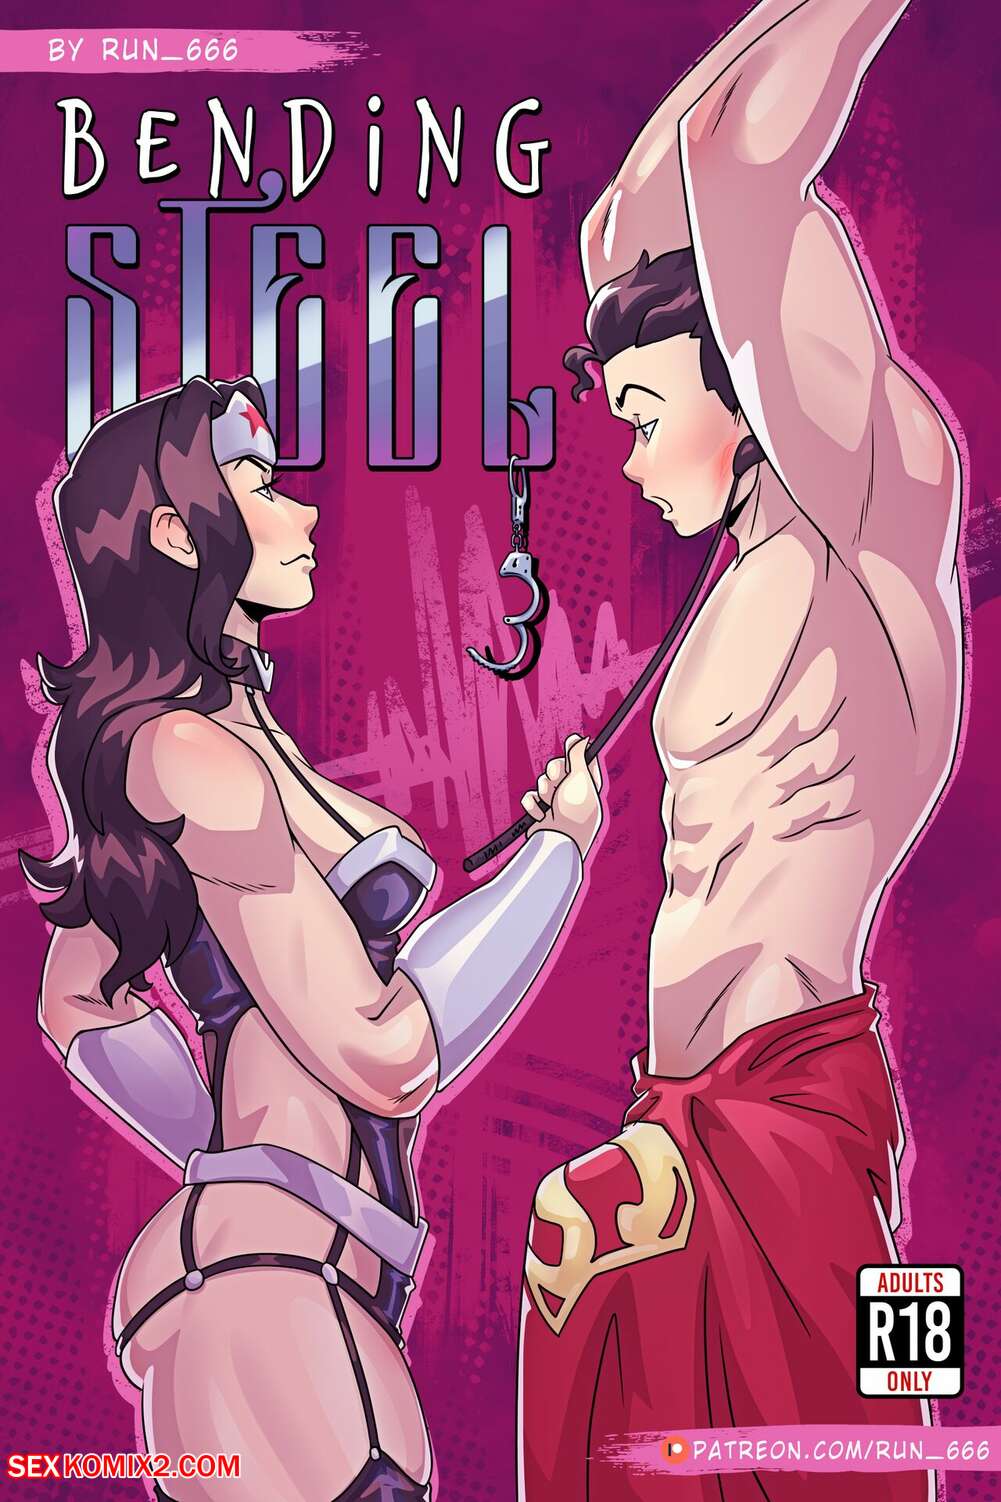 1001px x 1502px - âœ…ï¸ Porn comic Bending Steel. Run 666. Wonder Woman. Sex comic returned  home, where | Porn comics in English for adults only | sexkomix2.com